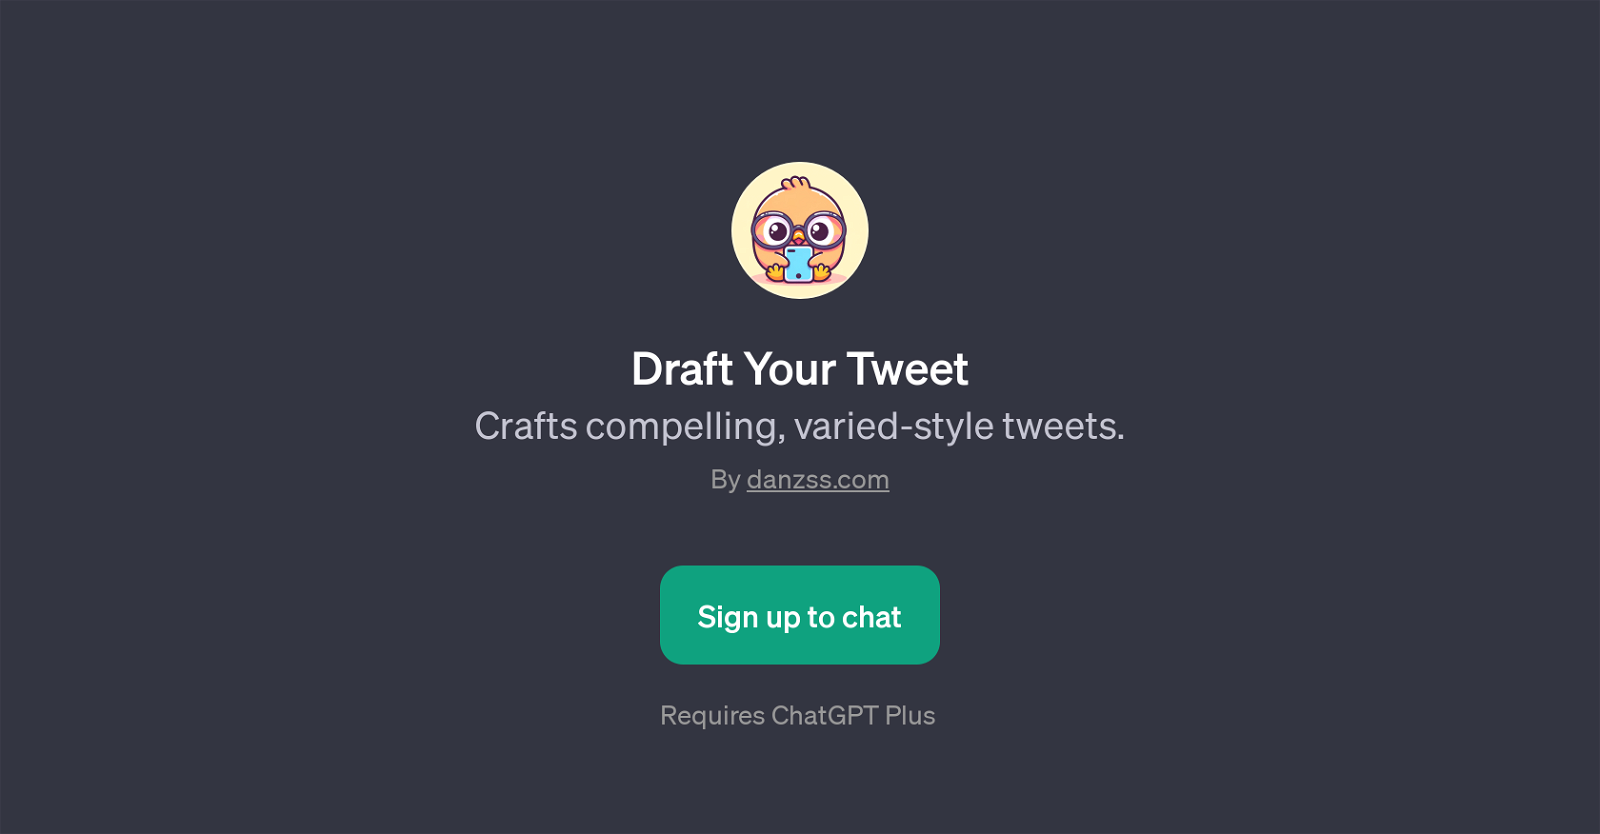 Draft Your Tweet website